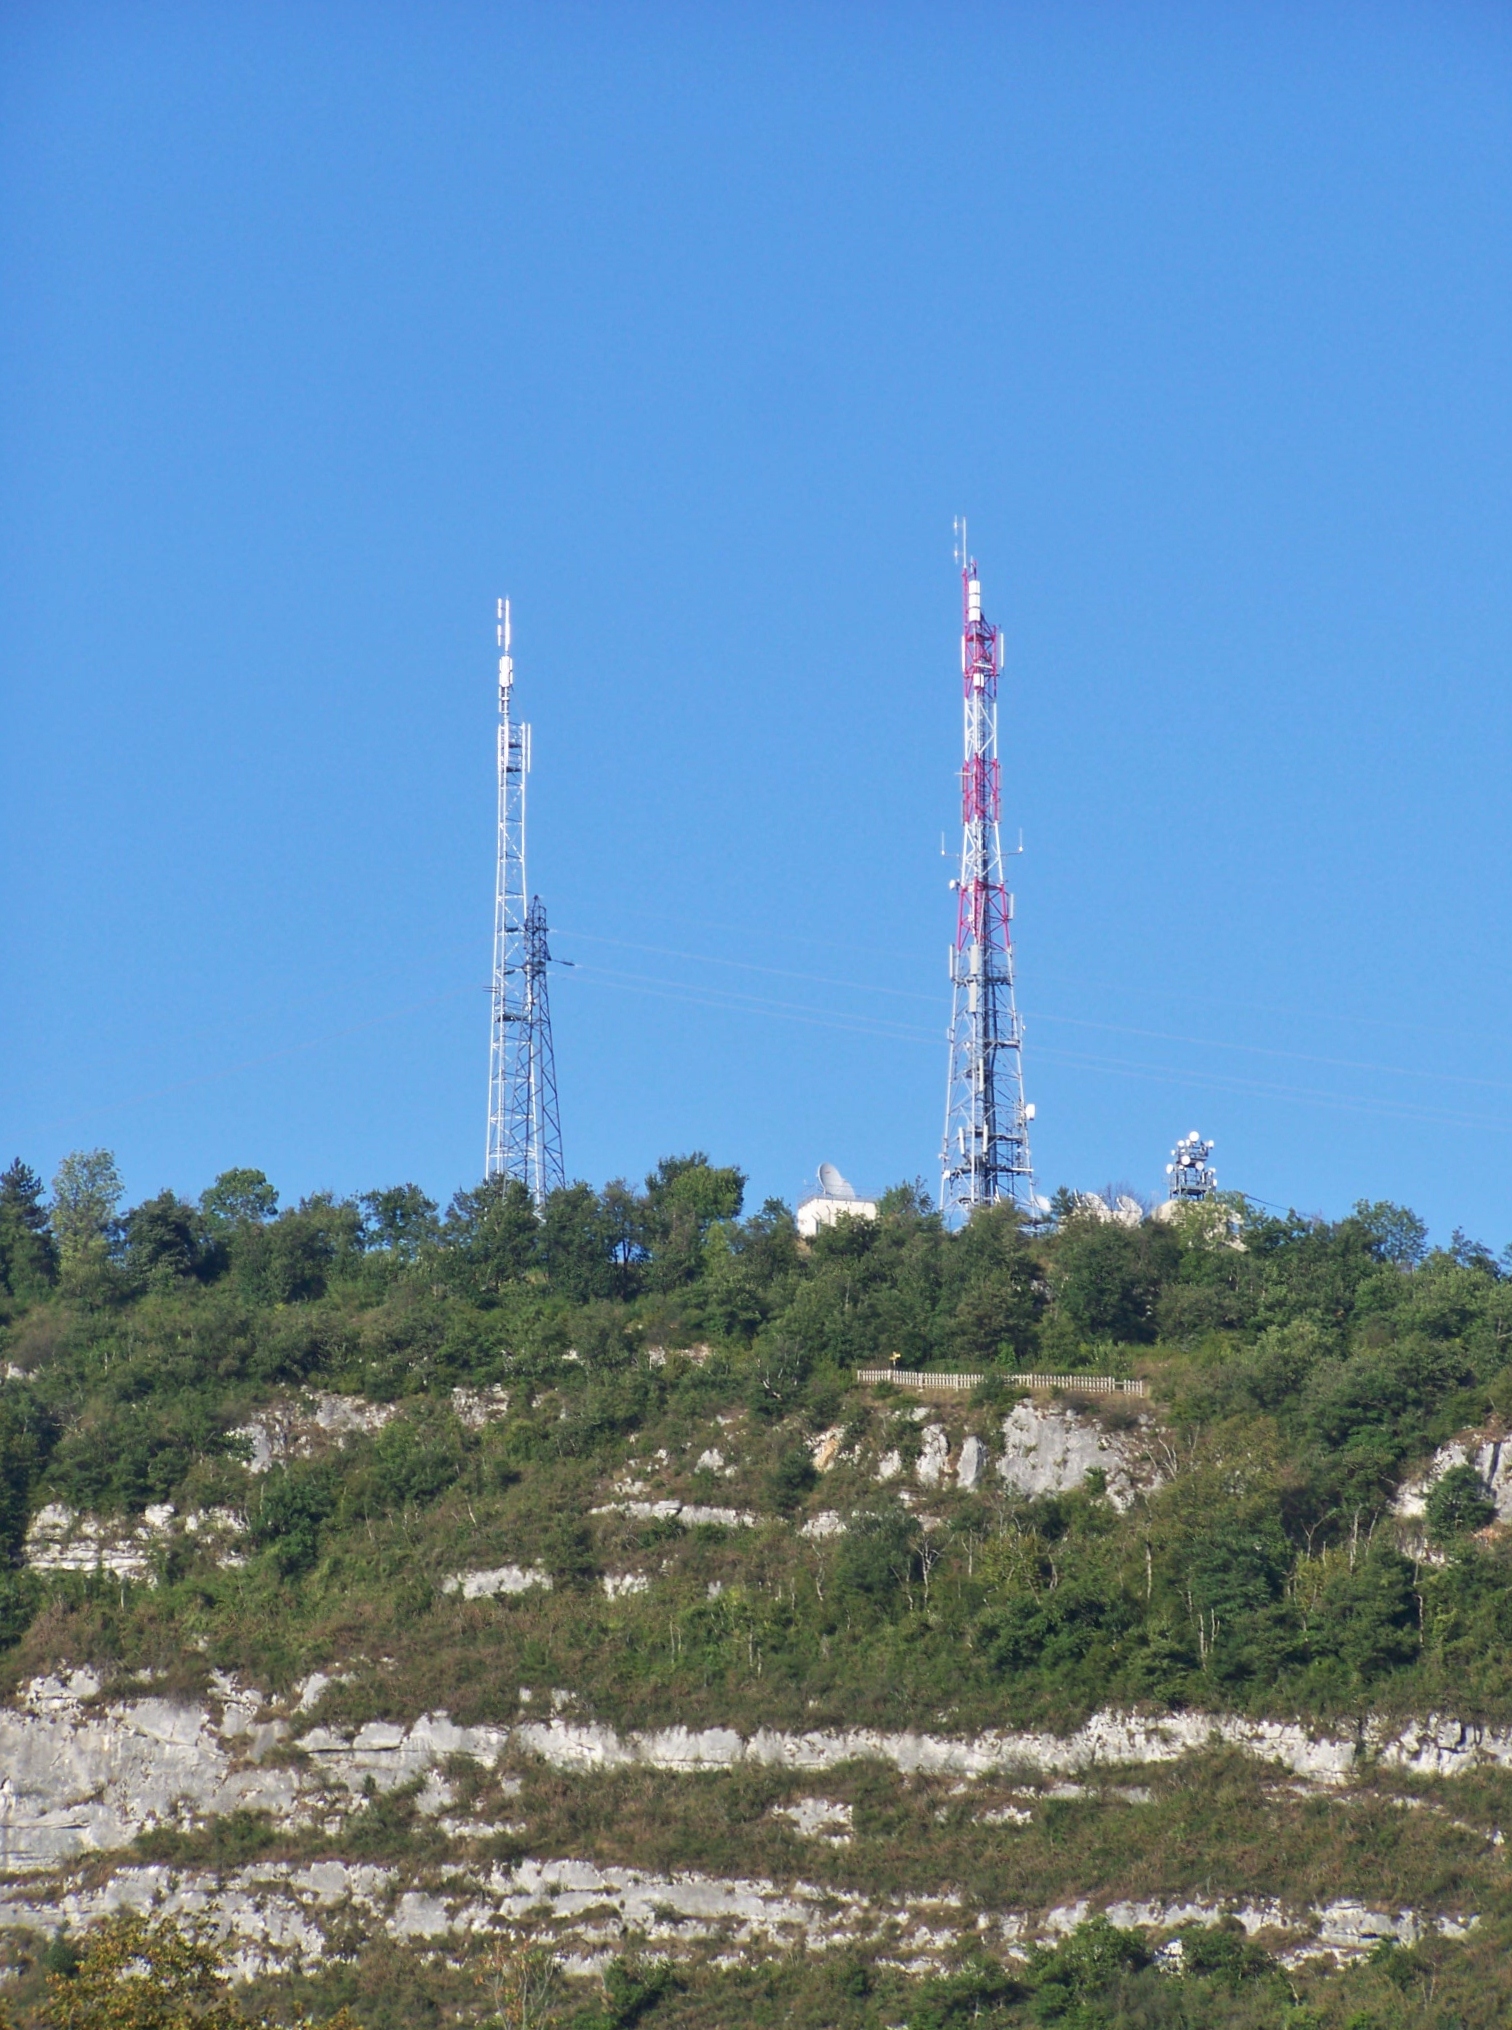 Informations antennes-relais - Site officiel de la ville de Moirans